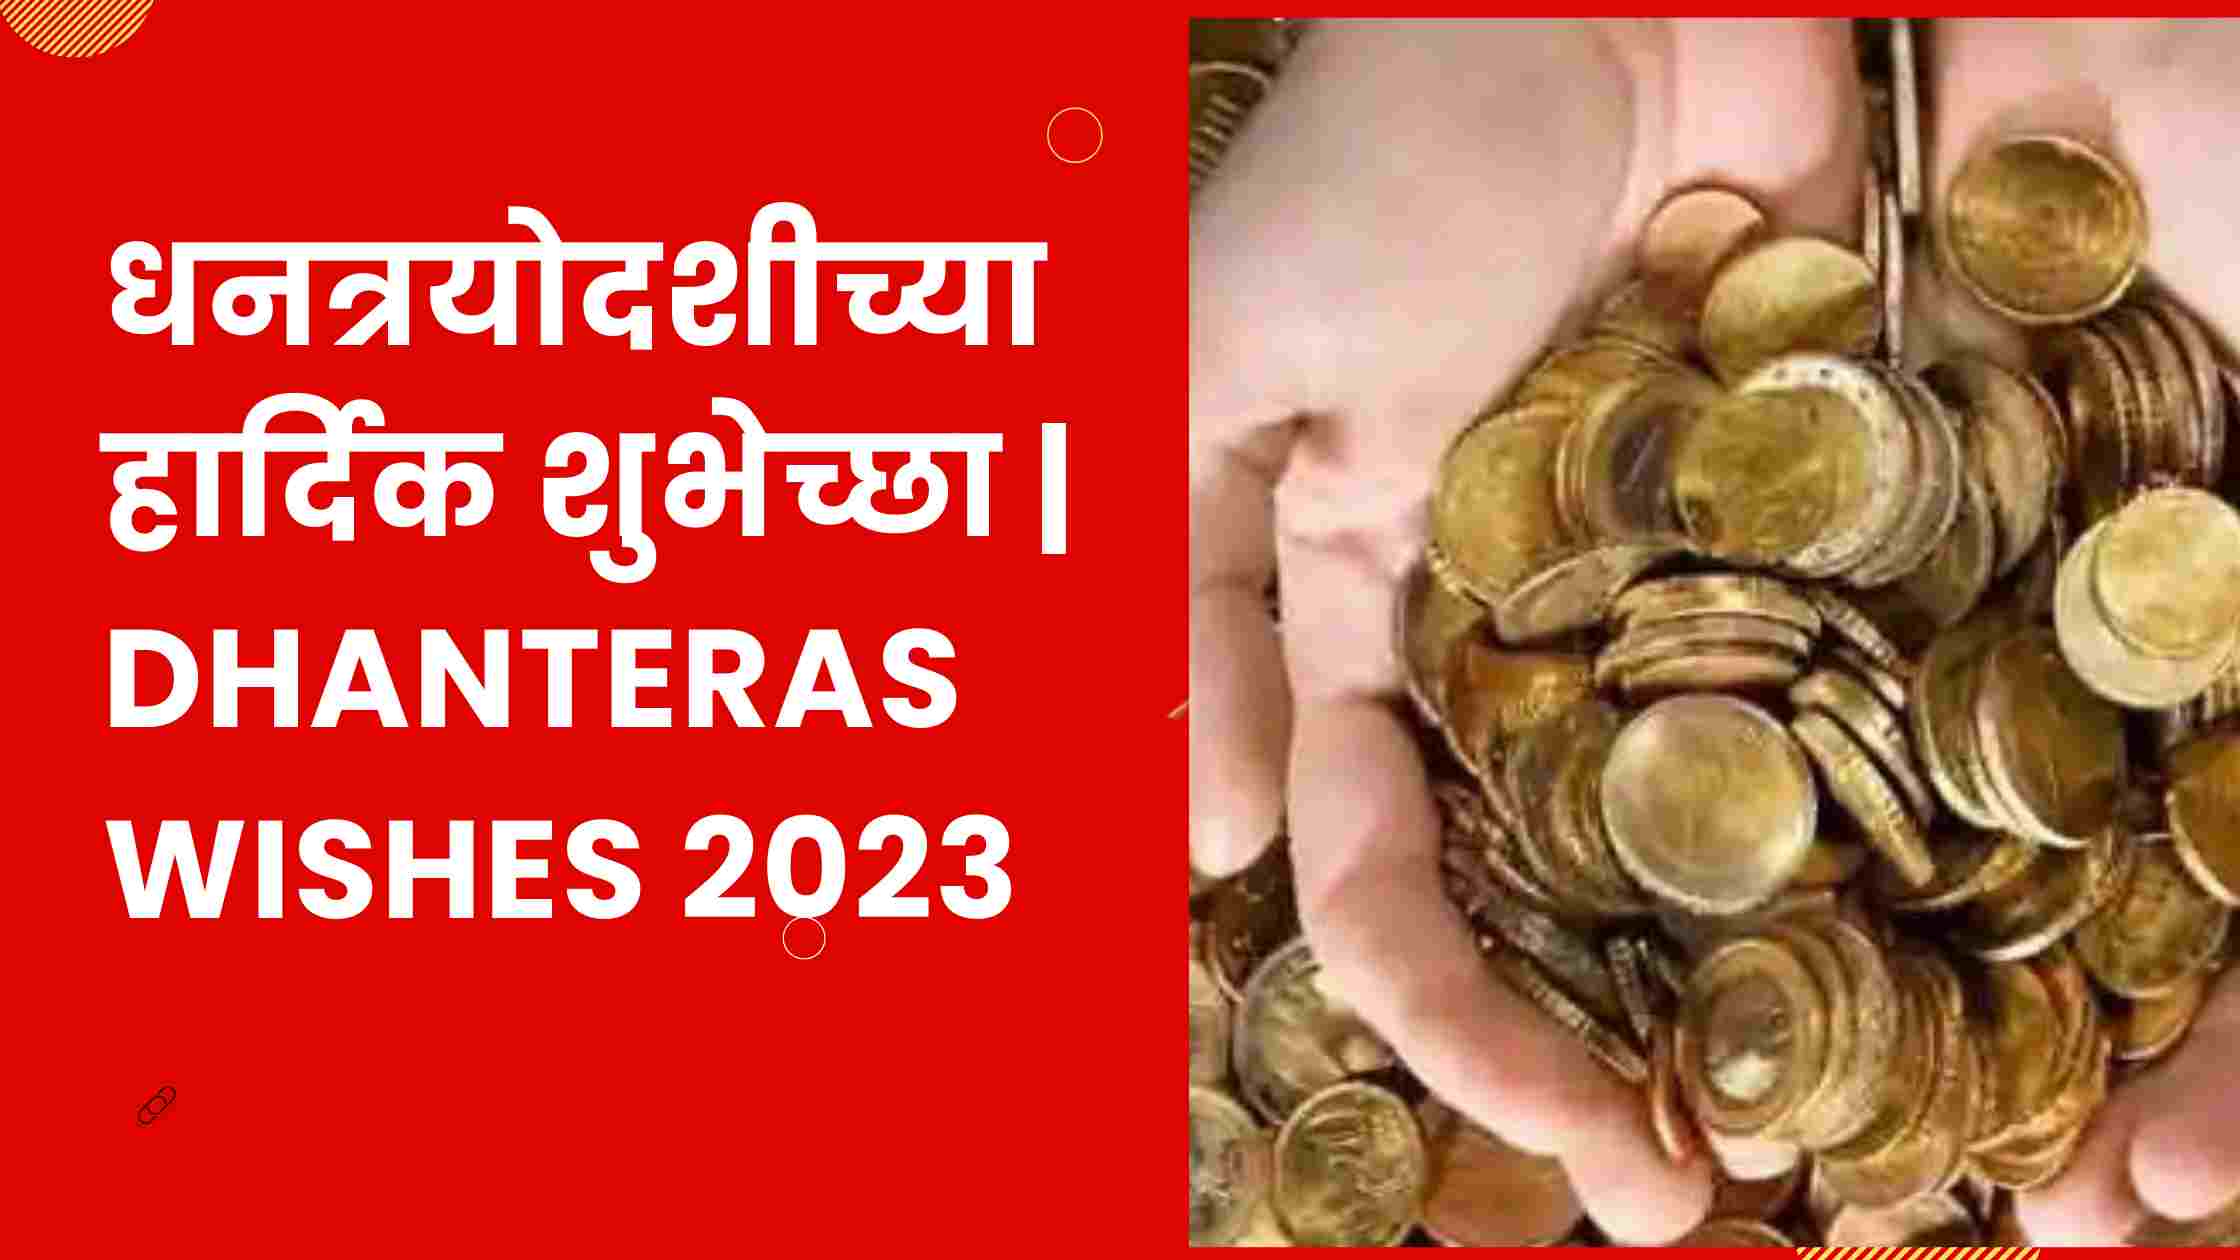 धनत्रयोदशीच्या हार्दिक शुभेच्छा | Dhanteras Wishes 2023